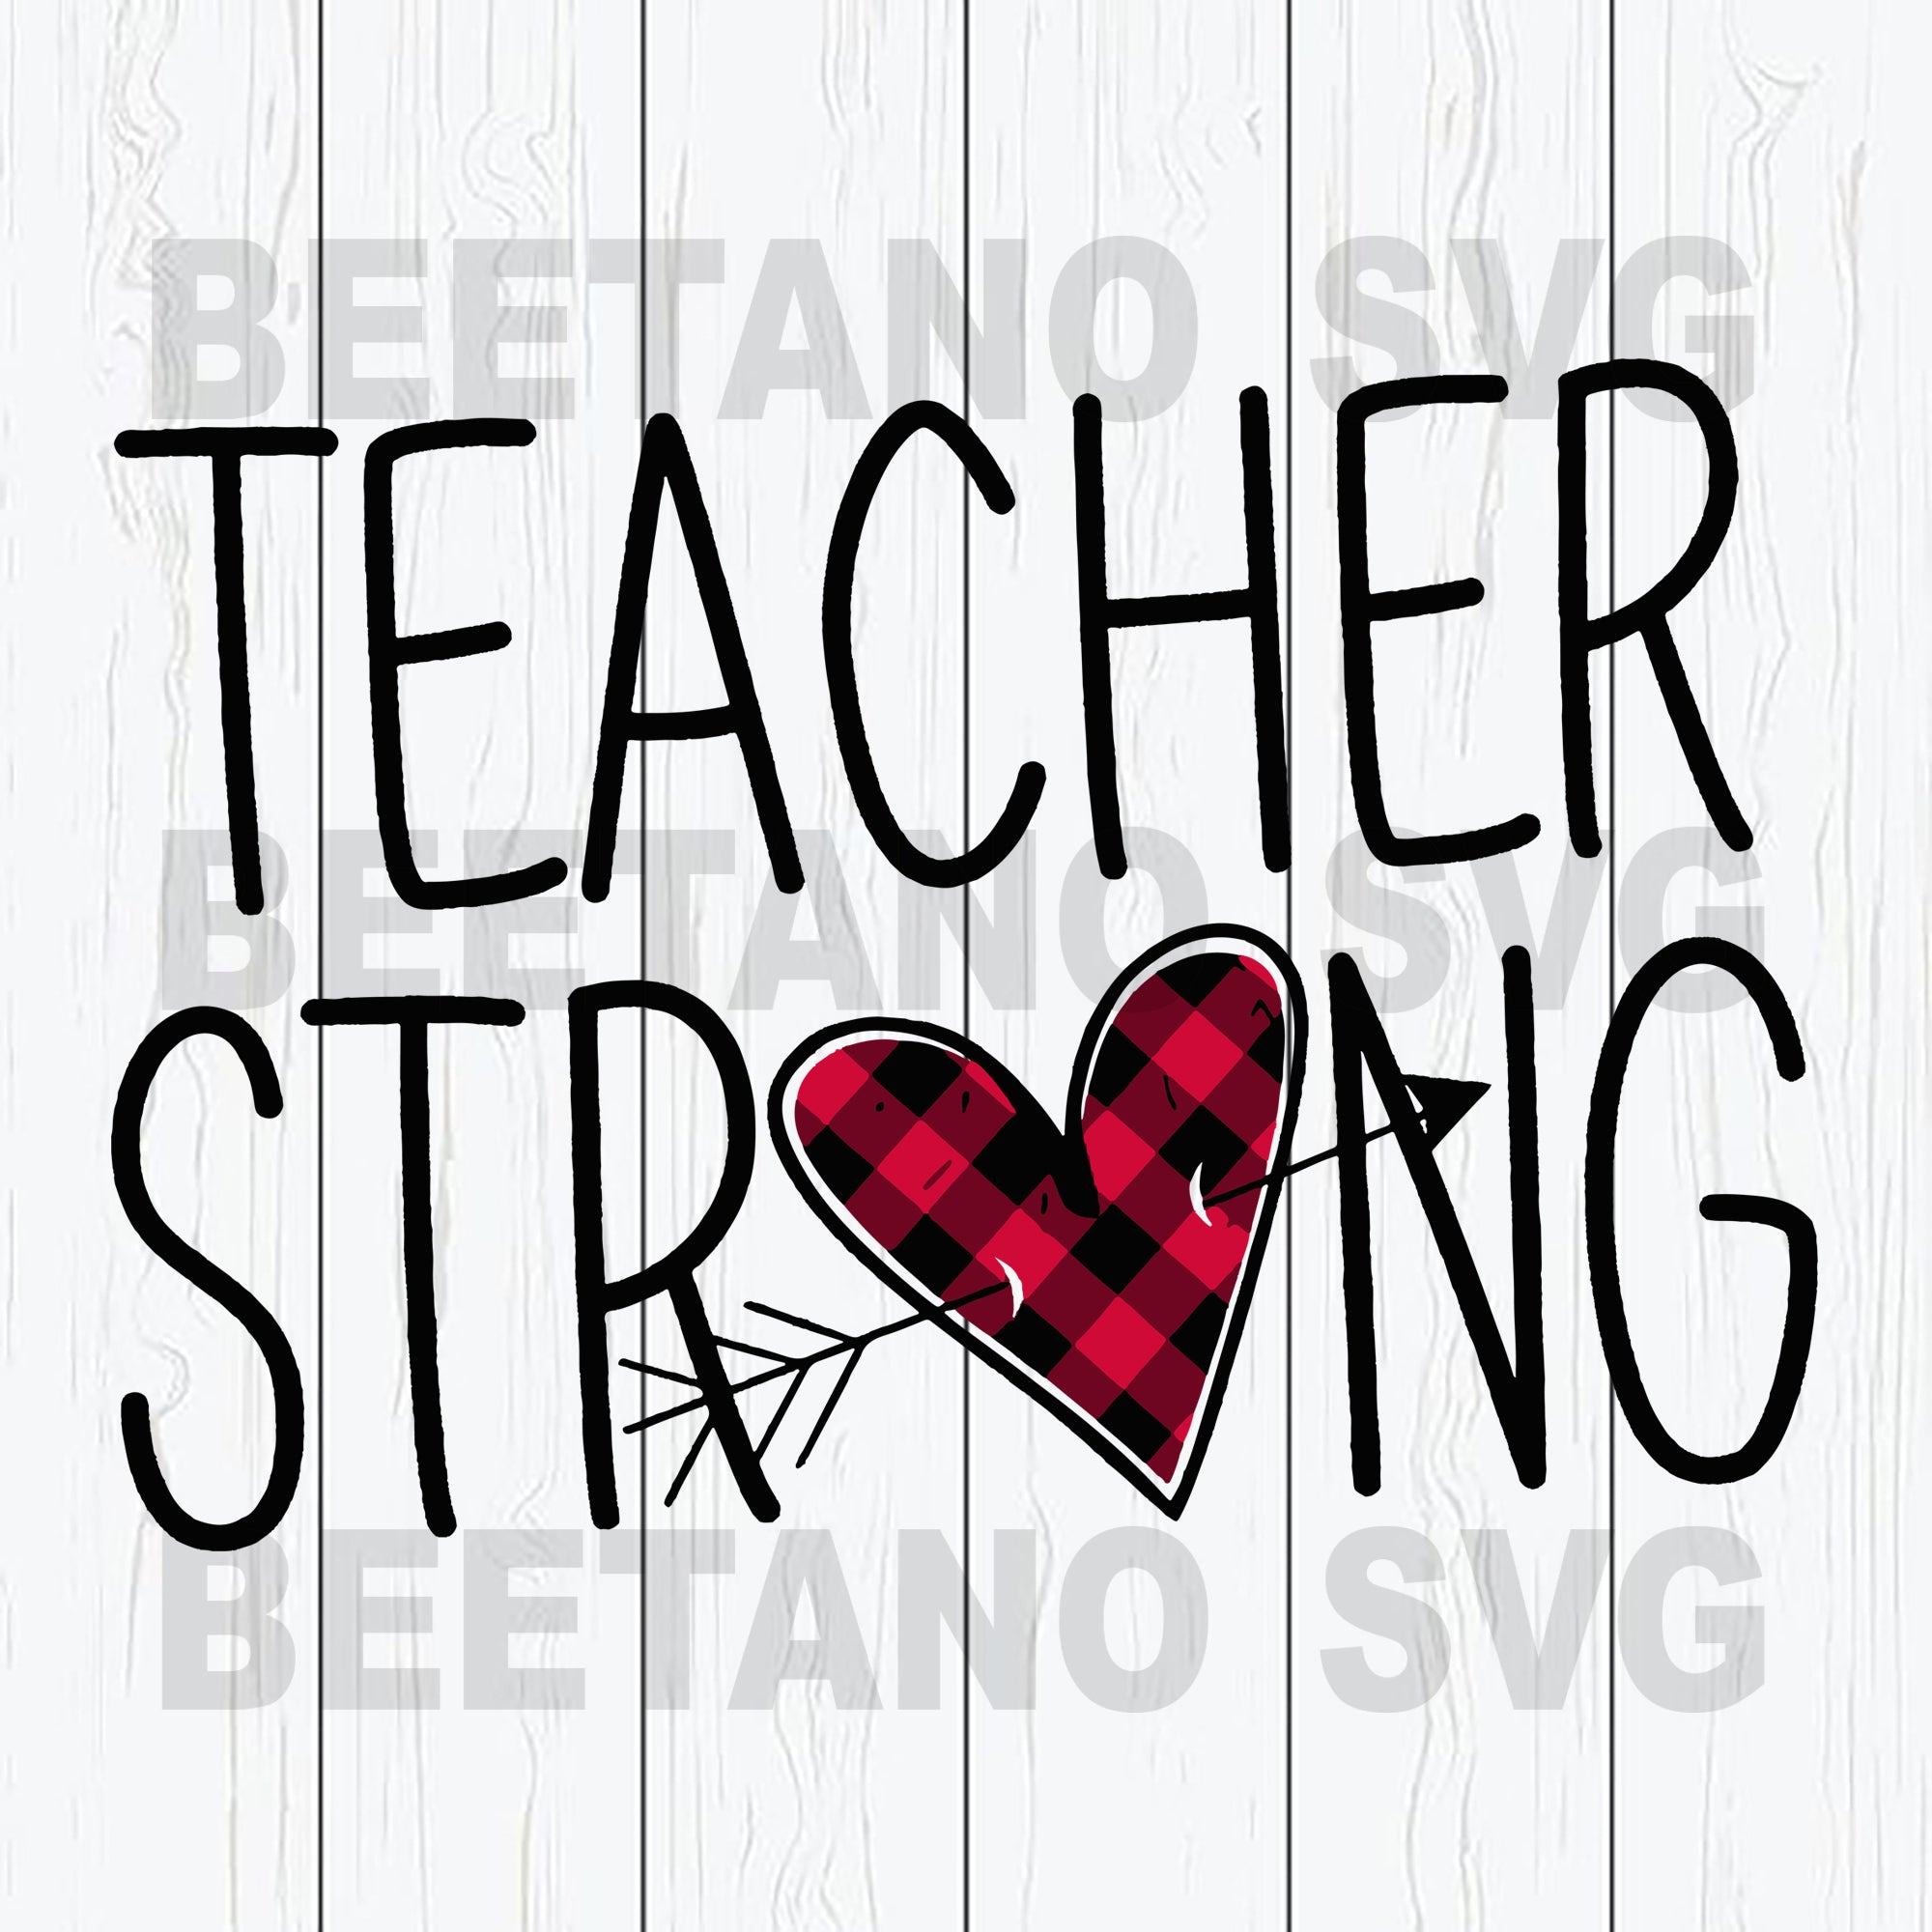 Download Teacher Strong Svg Files Teacher Svg Teacher Cutting Files Teacher Beetanosvg Scalable Vector Graphics